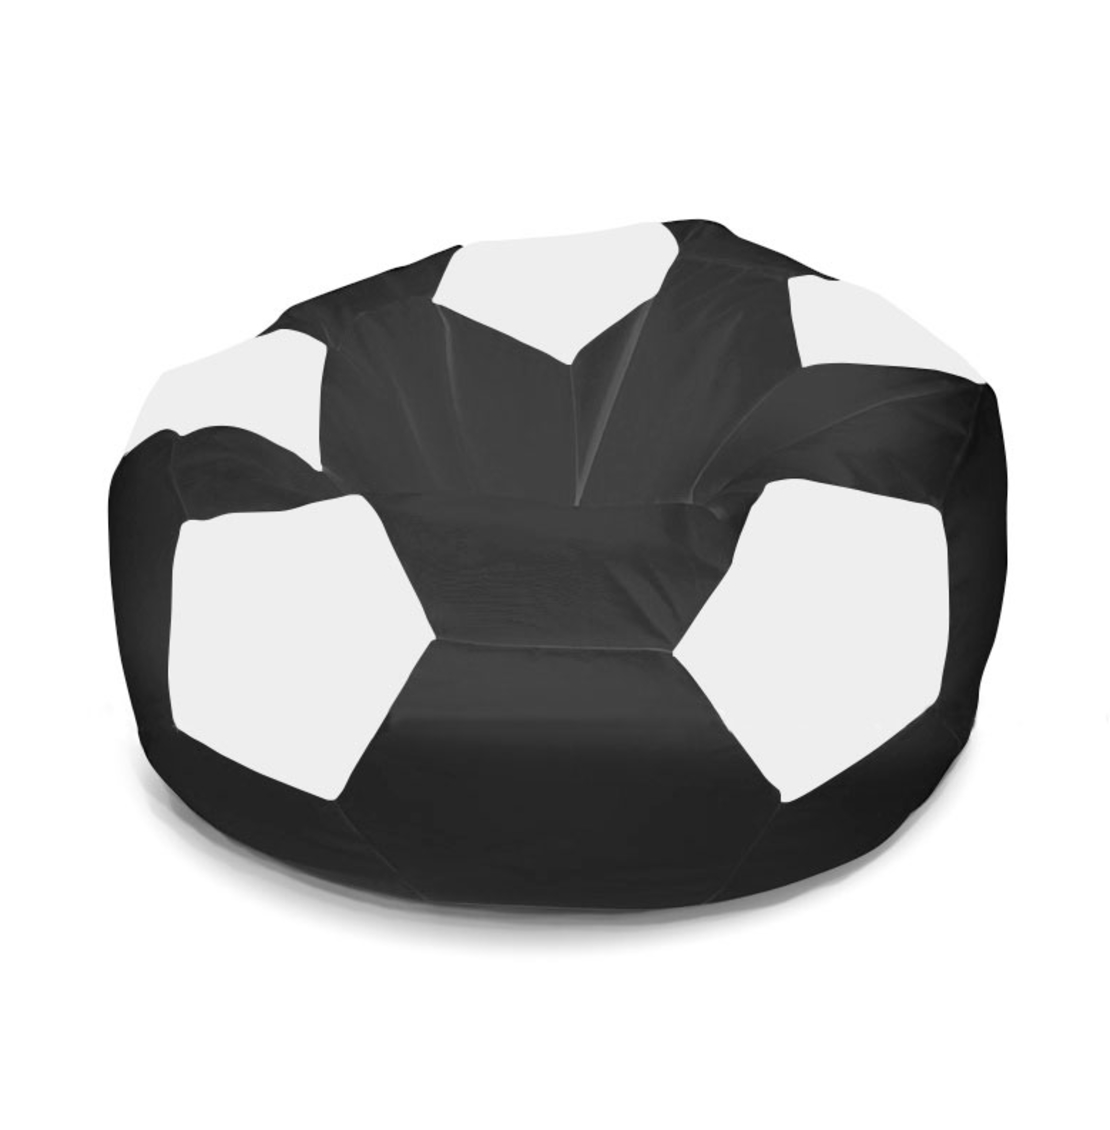 פוף כדורגל - שחור לבן